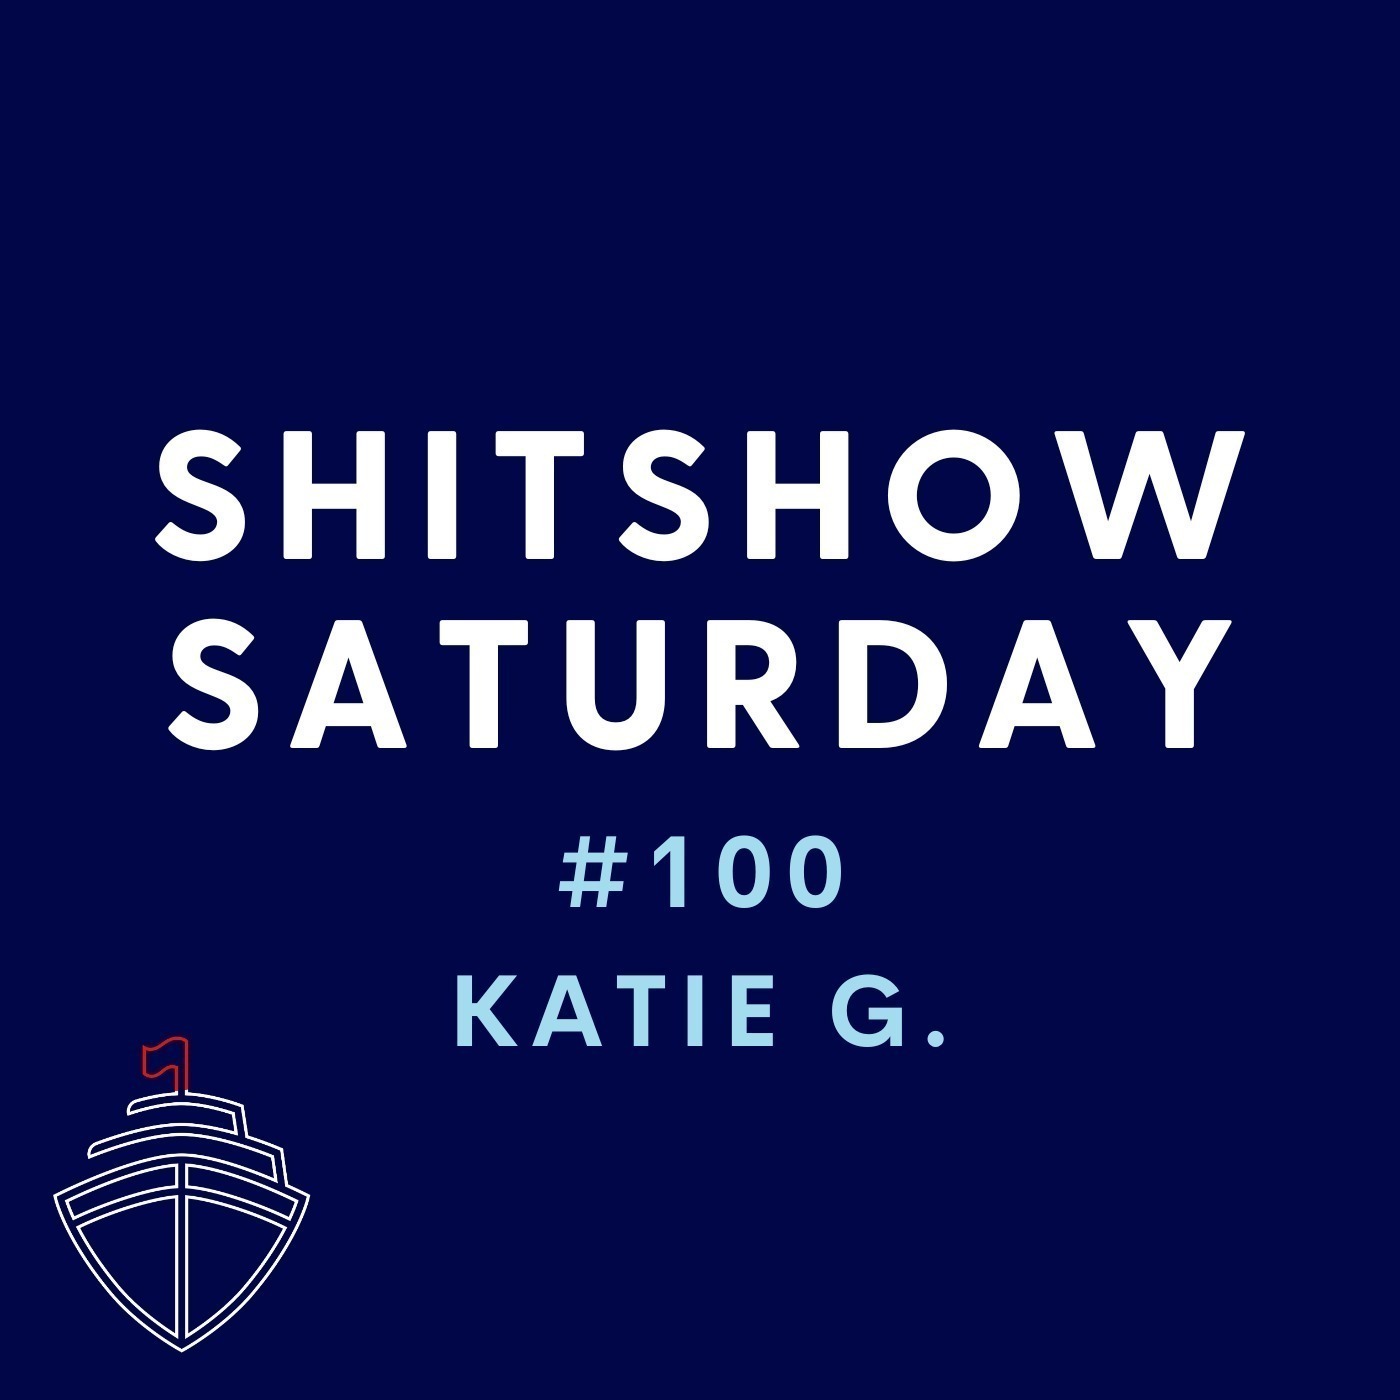 SHITSHOW SATURDAY #100 - Katie G.